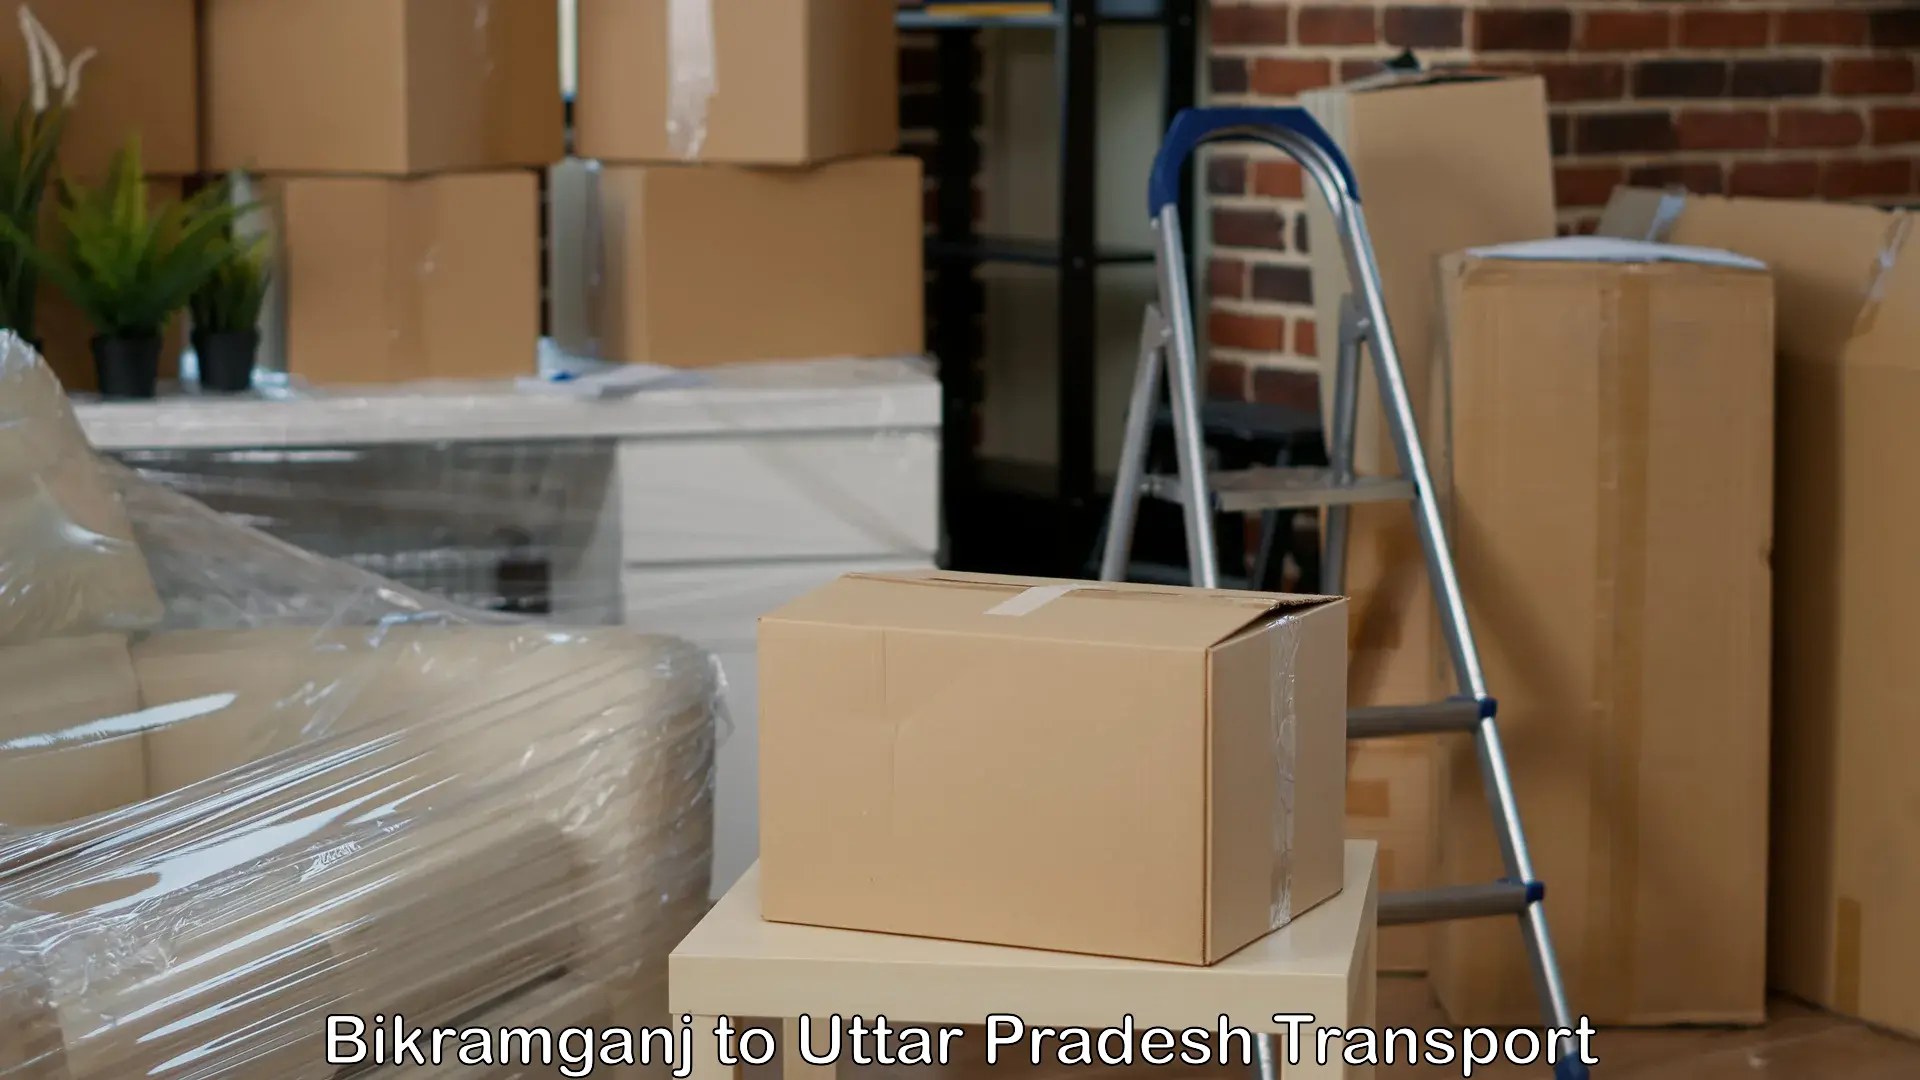 Daily parcel service transport Bikramganj to Sandila